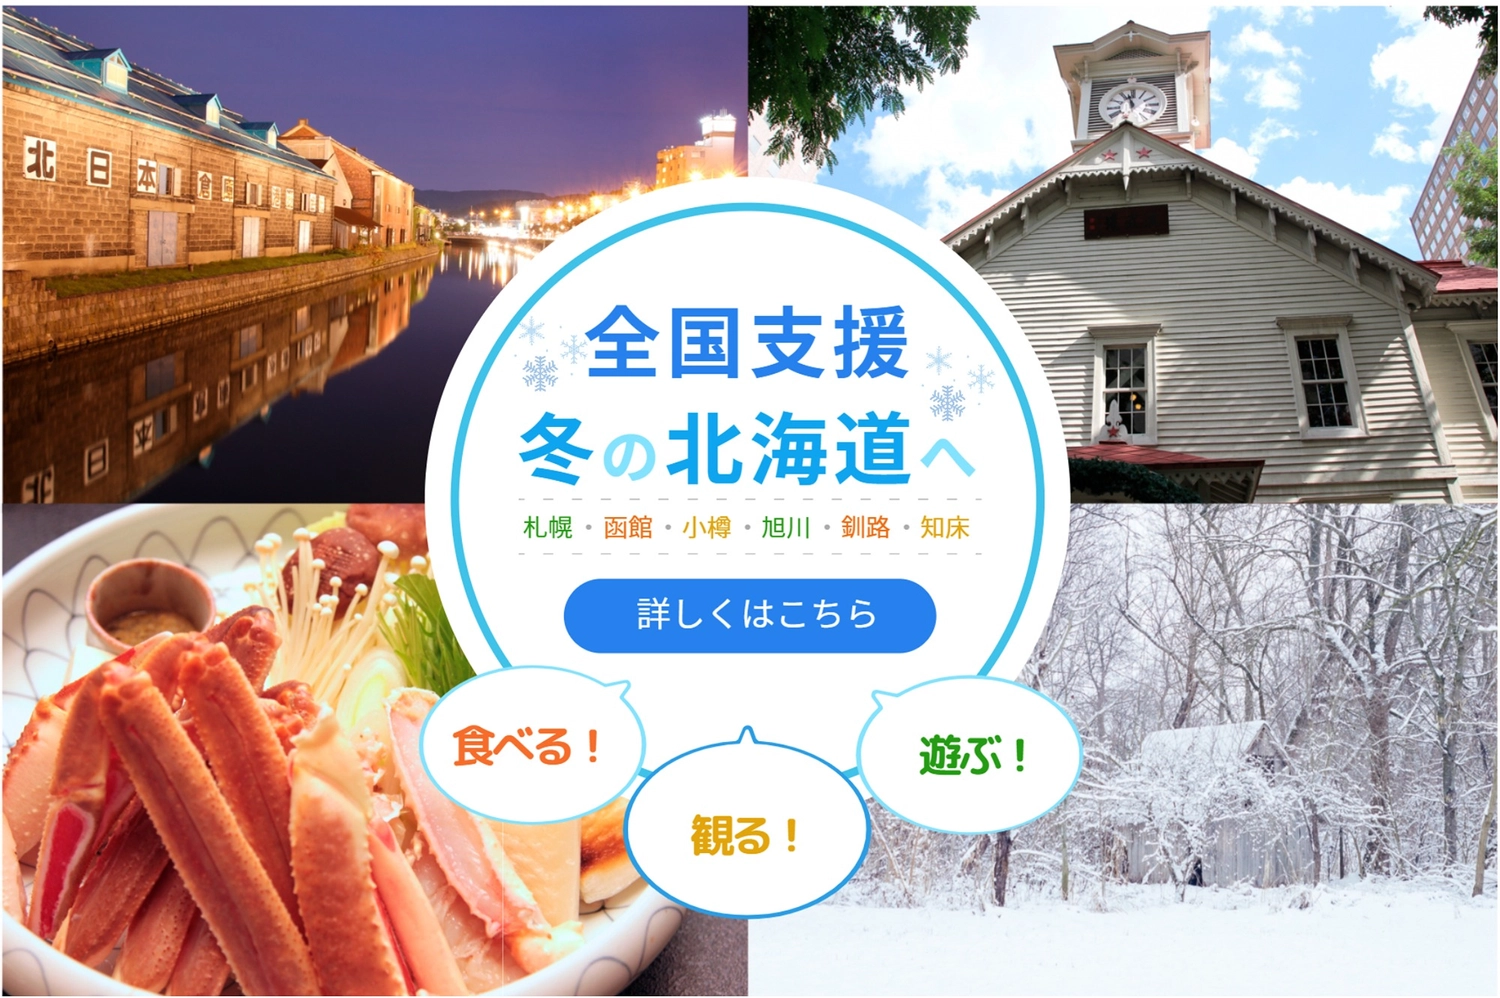 北海道写真満載で全国支援のバナー, 冬, カニ, 時計台, バナーテンプレート